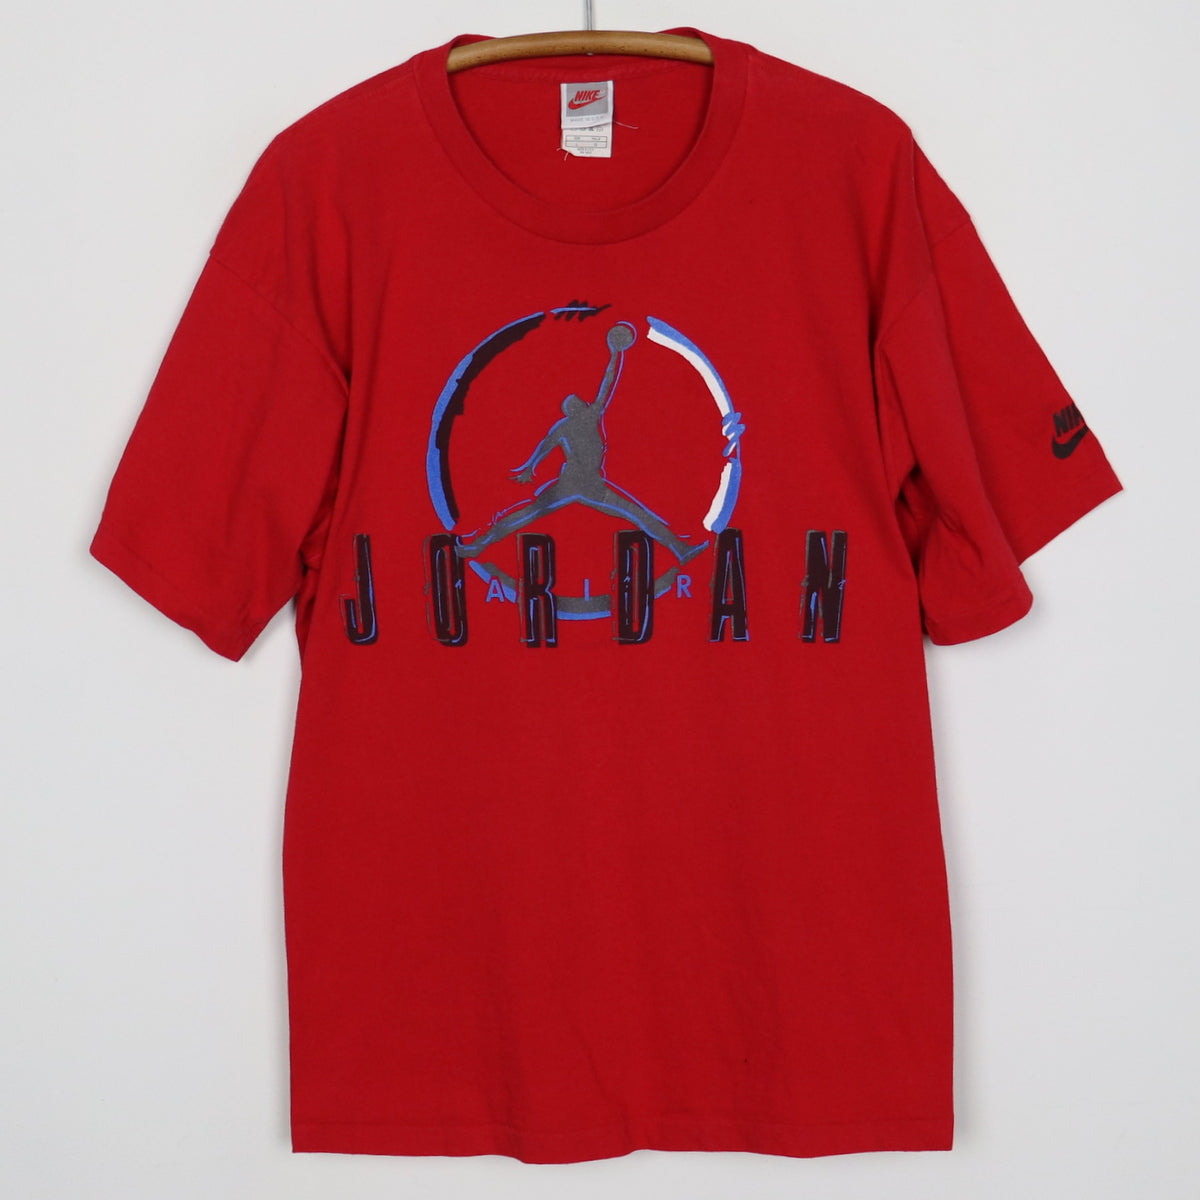 1990s Nike Air Jordan Shirt